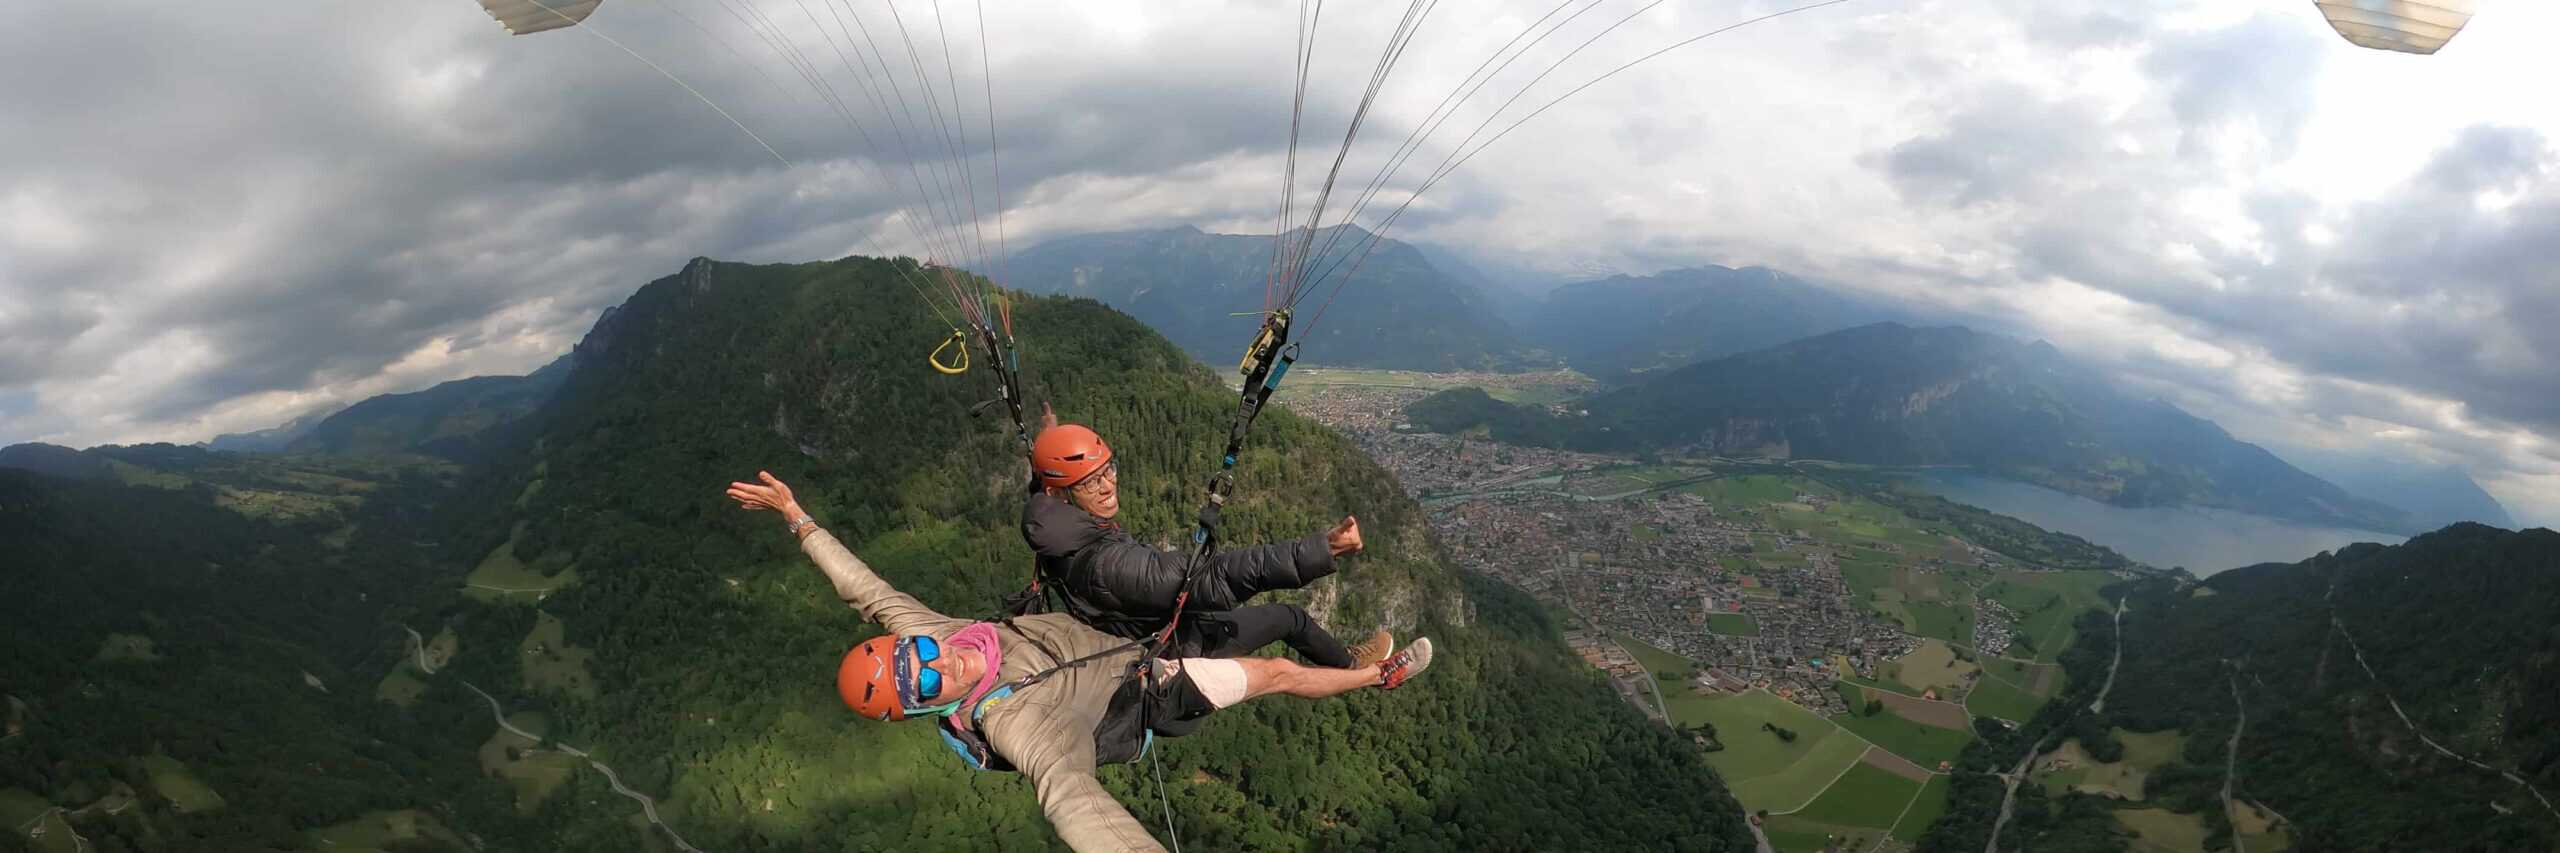 roaming-caffeine-dad-paragliding